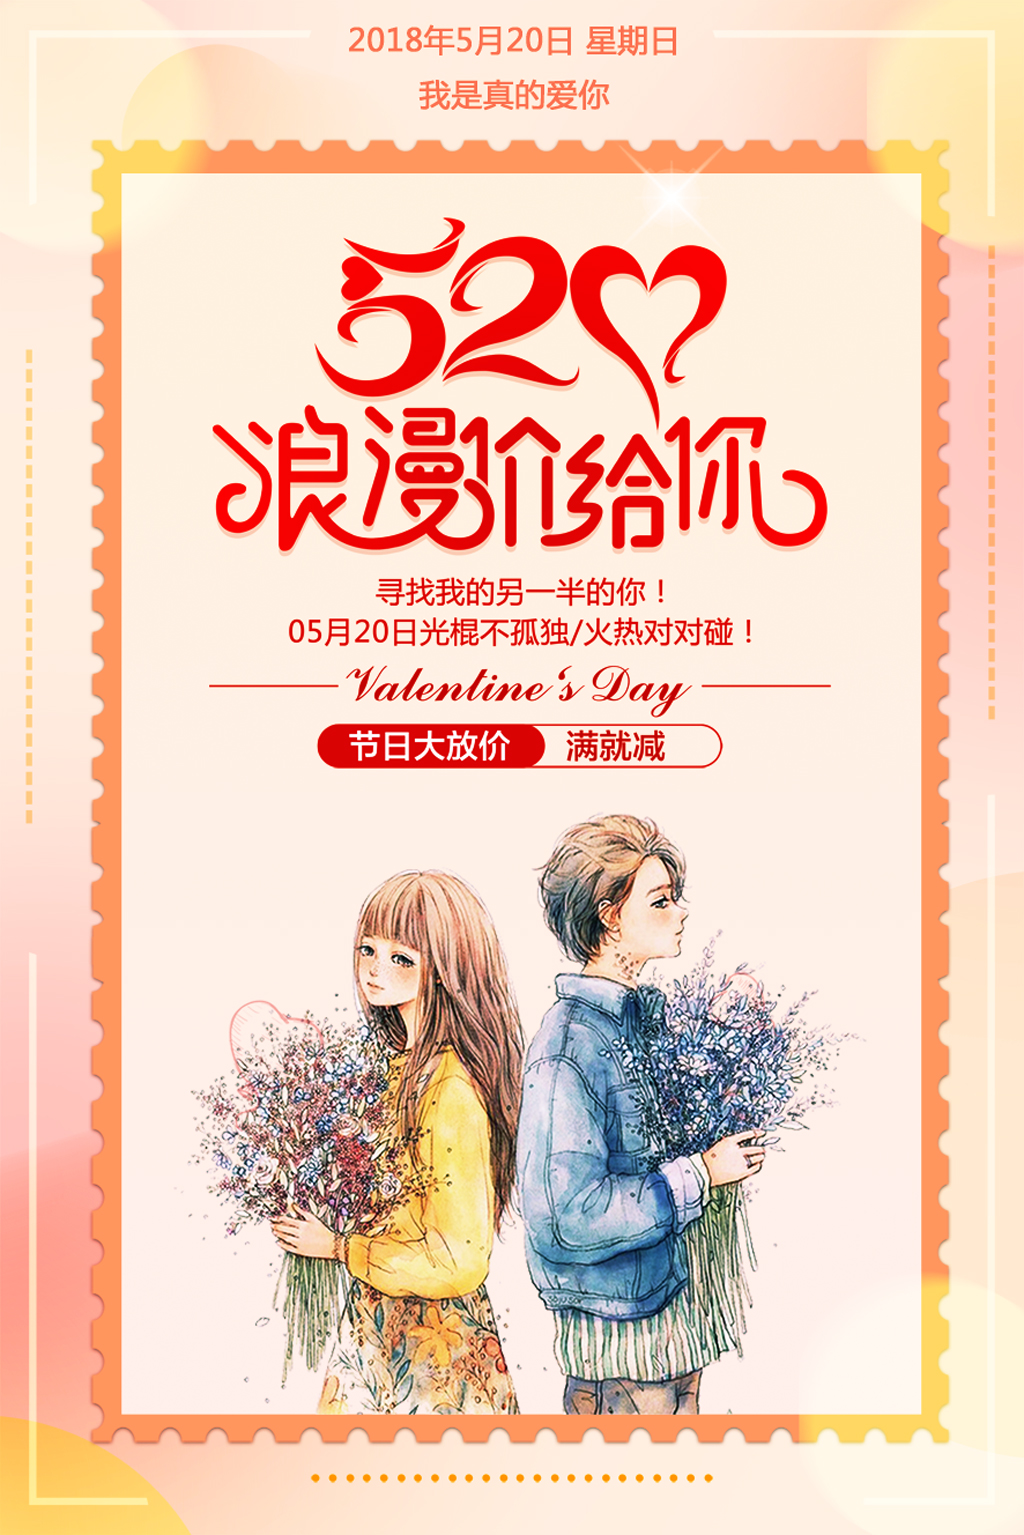 千库原创520网络情人节表白节橙色温馨宣传海报图片